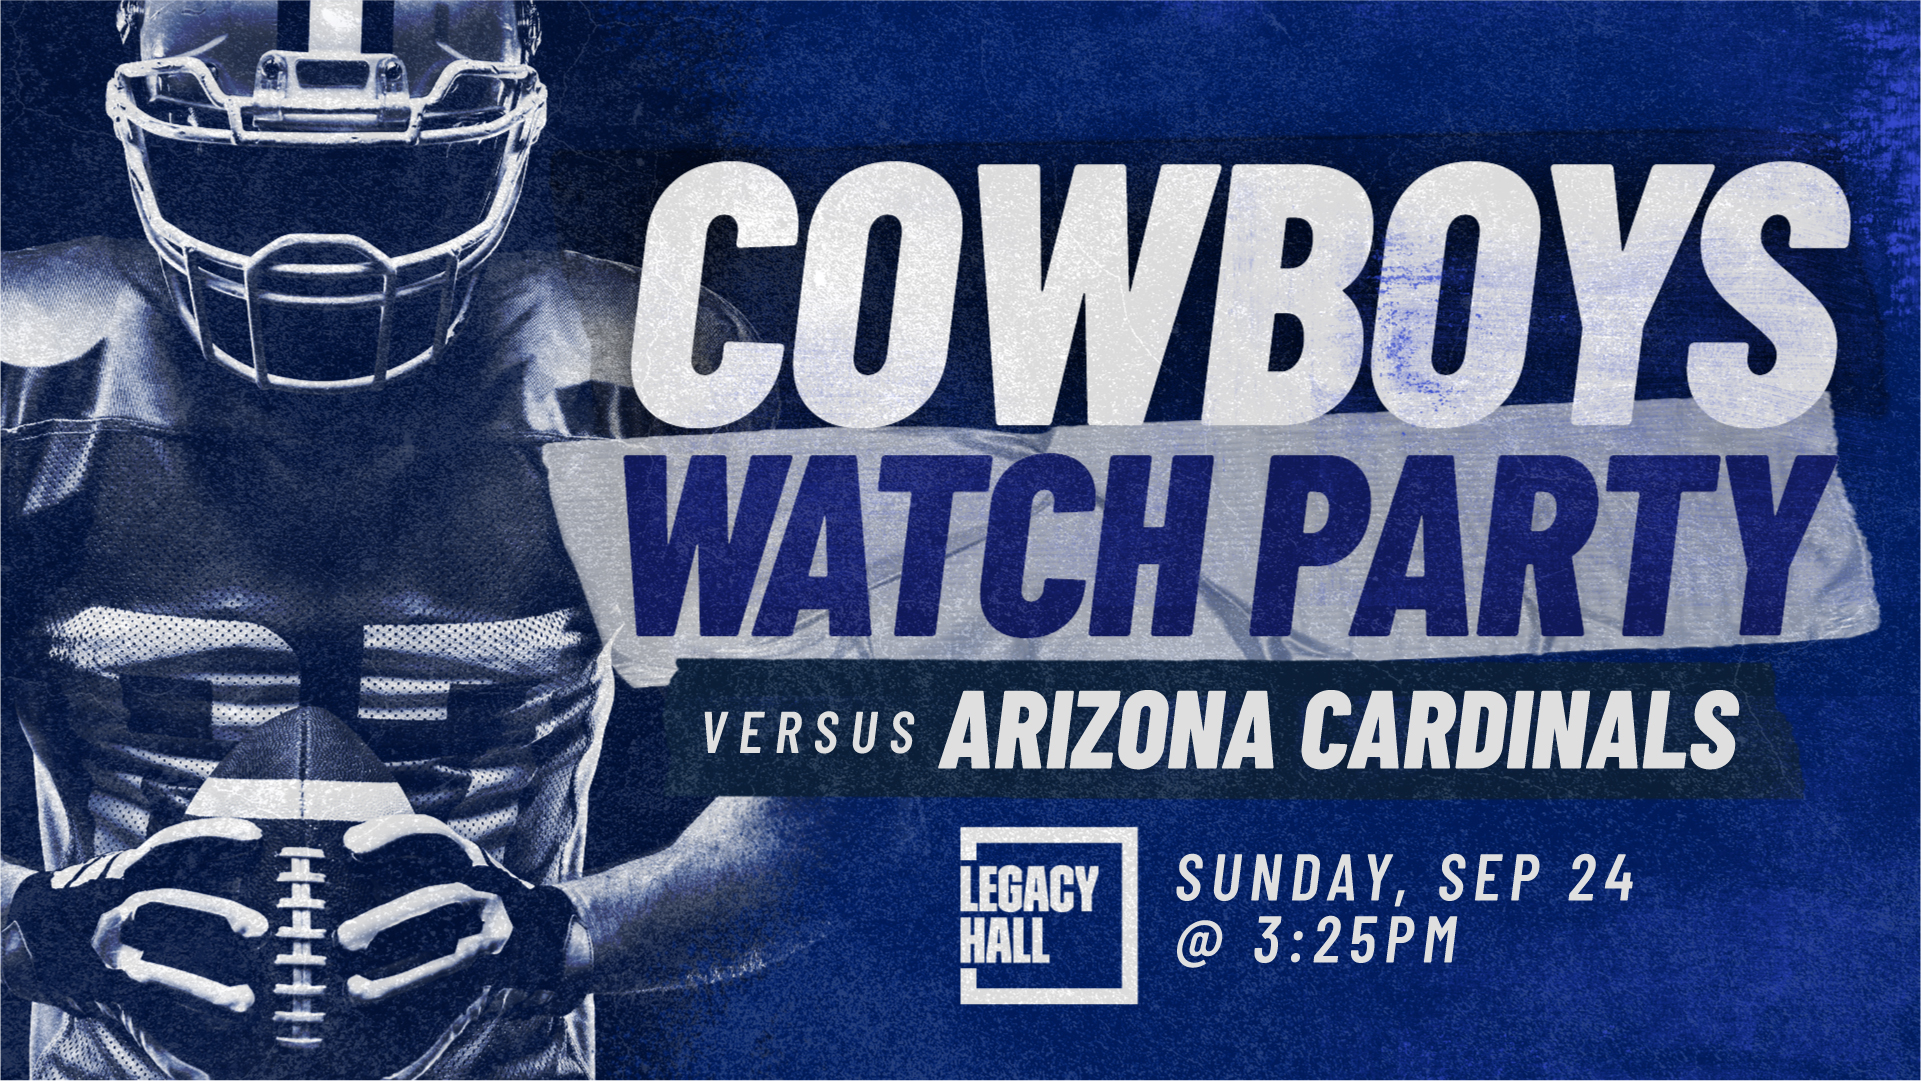 Dallas Cowboys vs Arizona Cardinals Watch Party